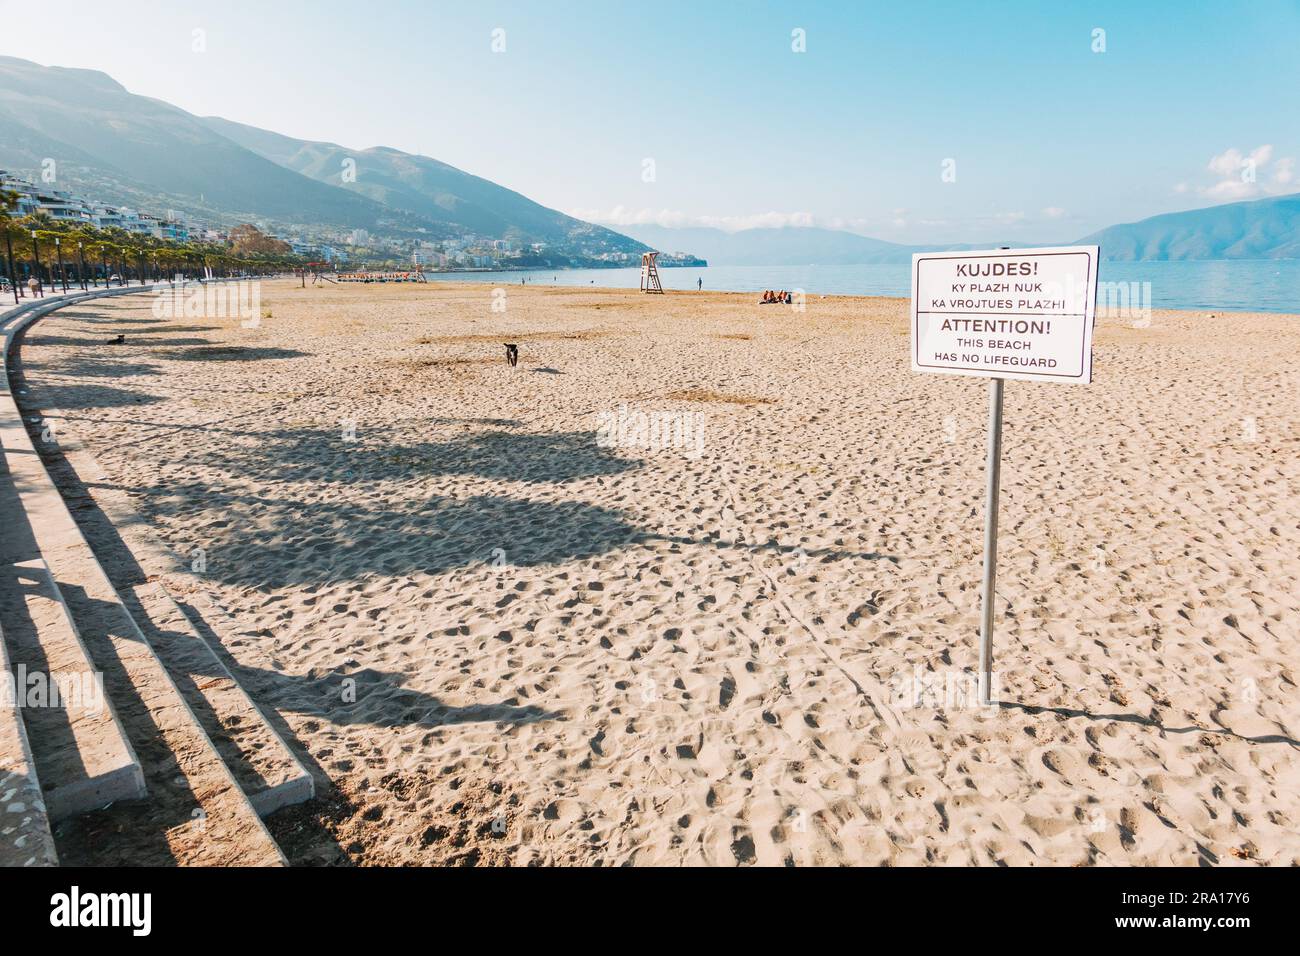 Un cartello che avverte che la spiaggia non ha bagnino, nella città costiera di Vlorë, nell'Albania meridionale Foto Stock